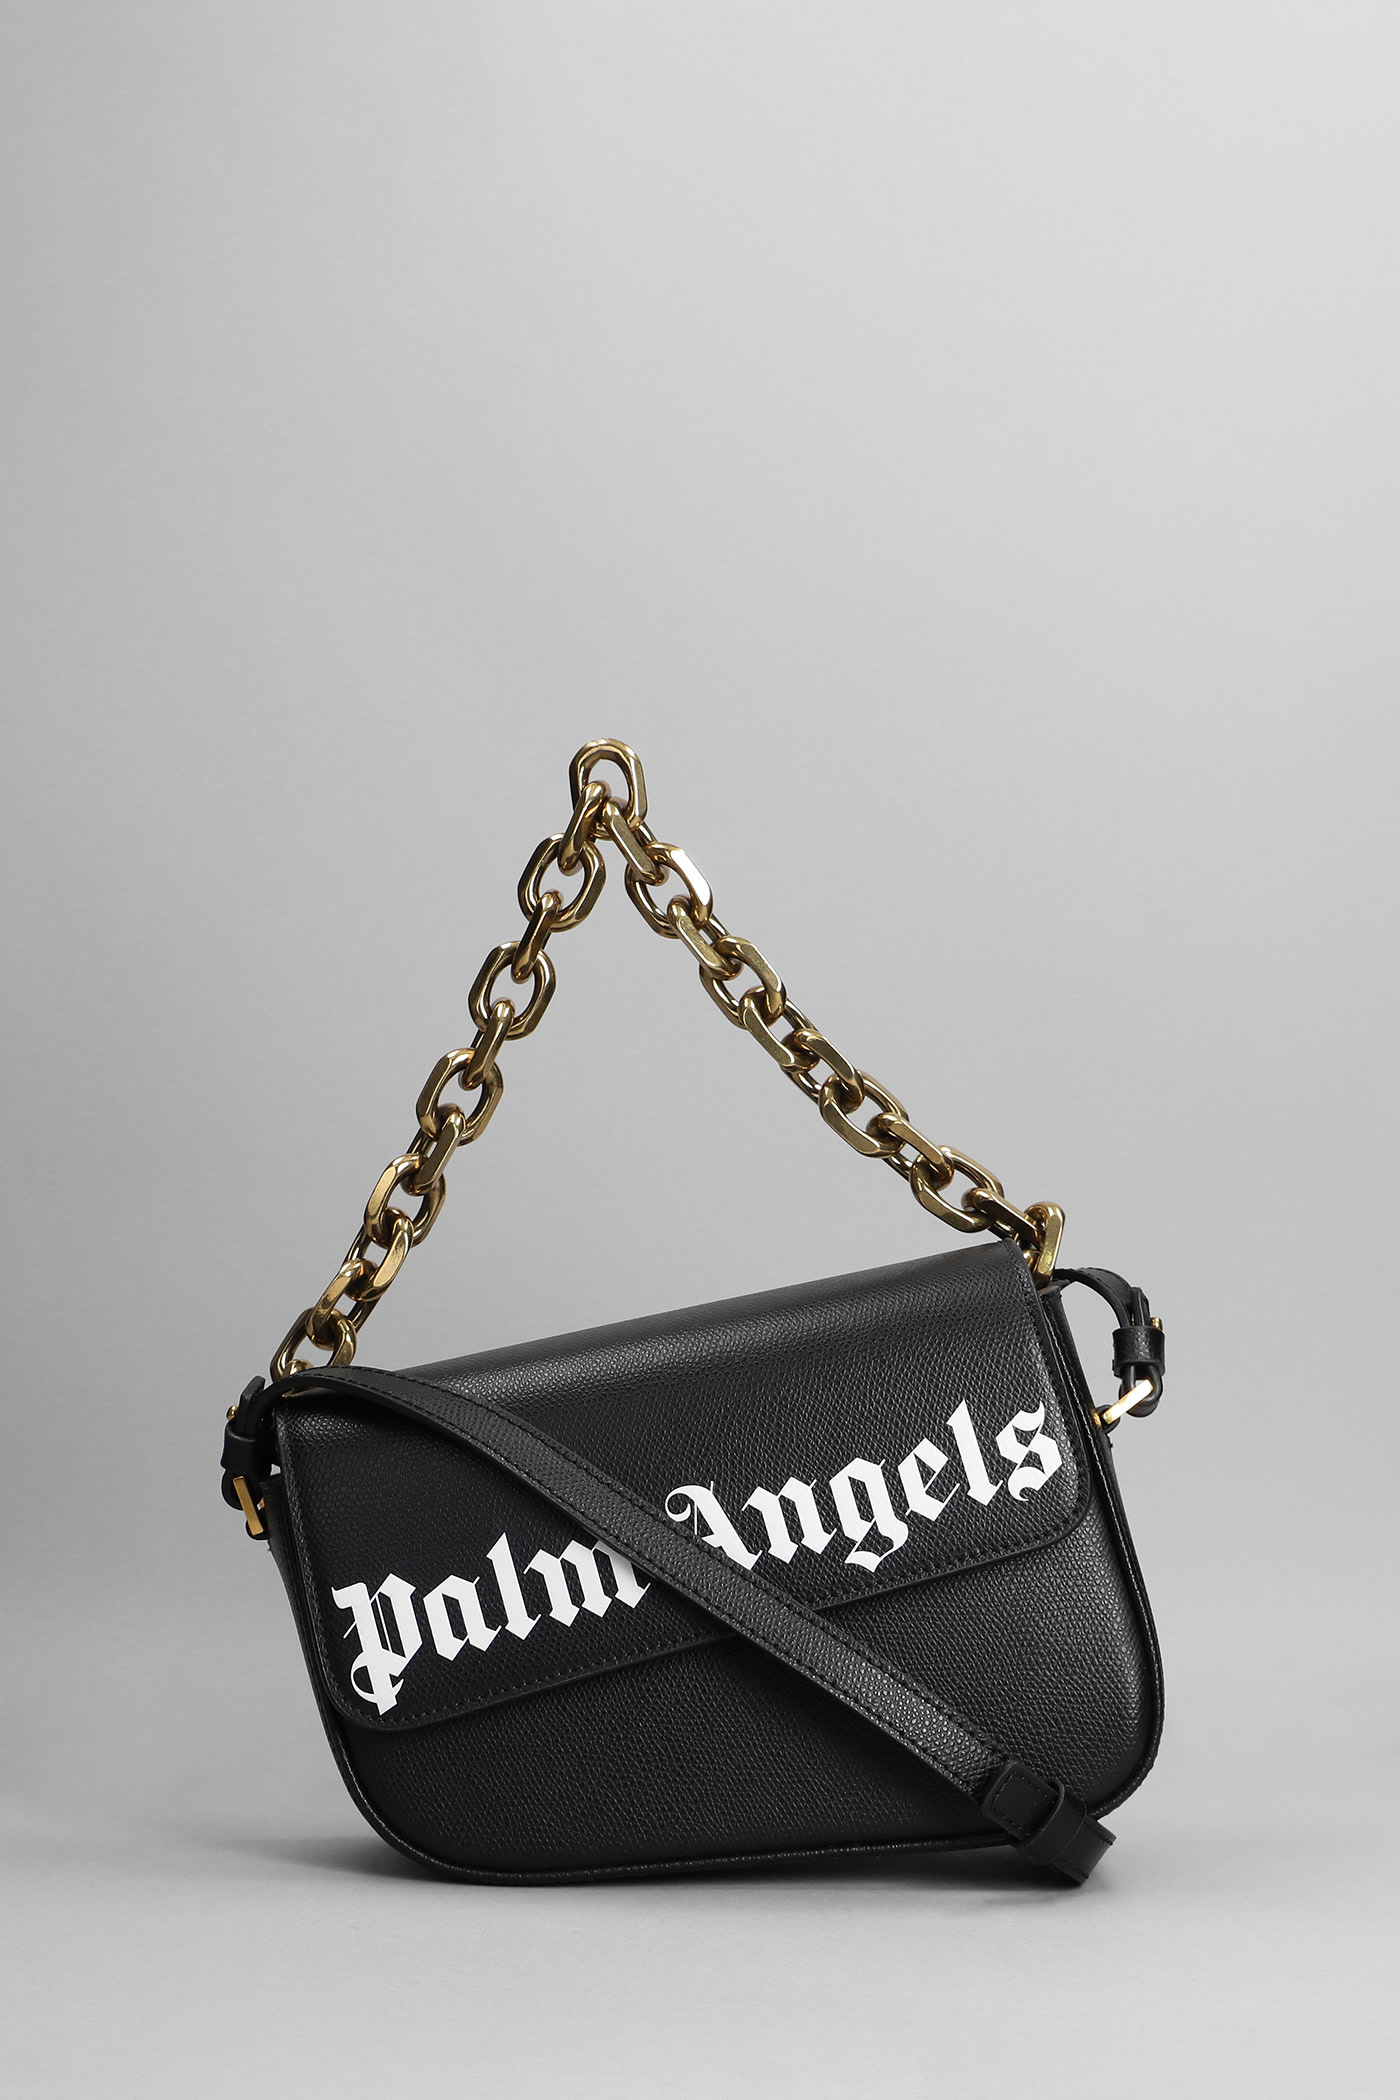 Palm Angels Shoulder Bag In Black Leather